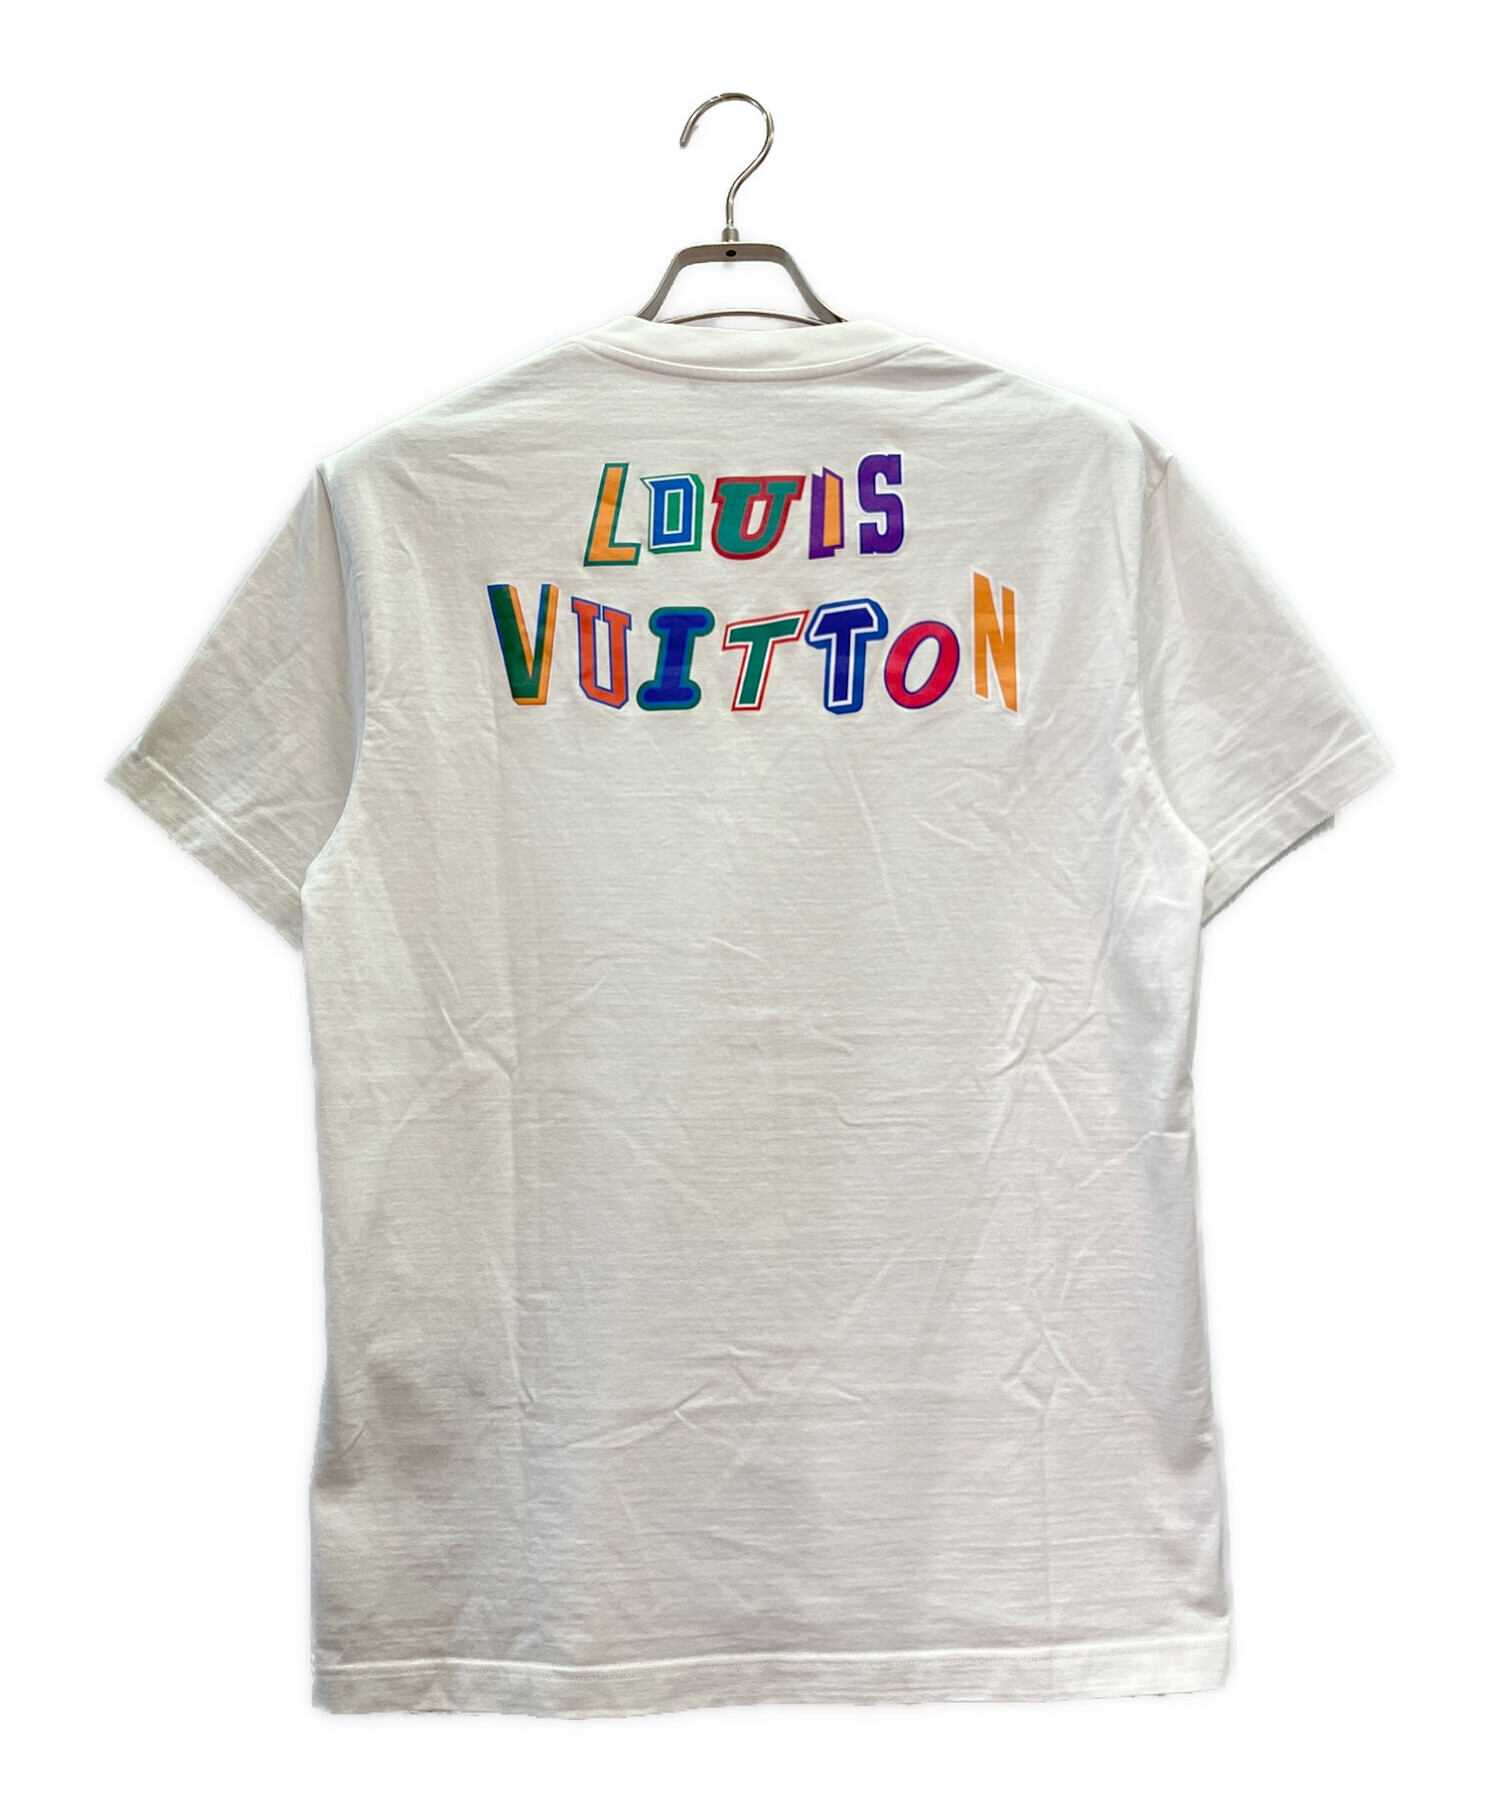 LOUIS VUITTON (ルイ ヴィトン) NBA レタープリントTシャツ ホワイト サイズ:S